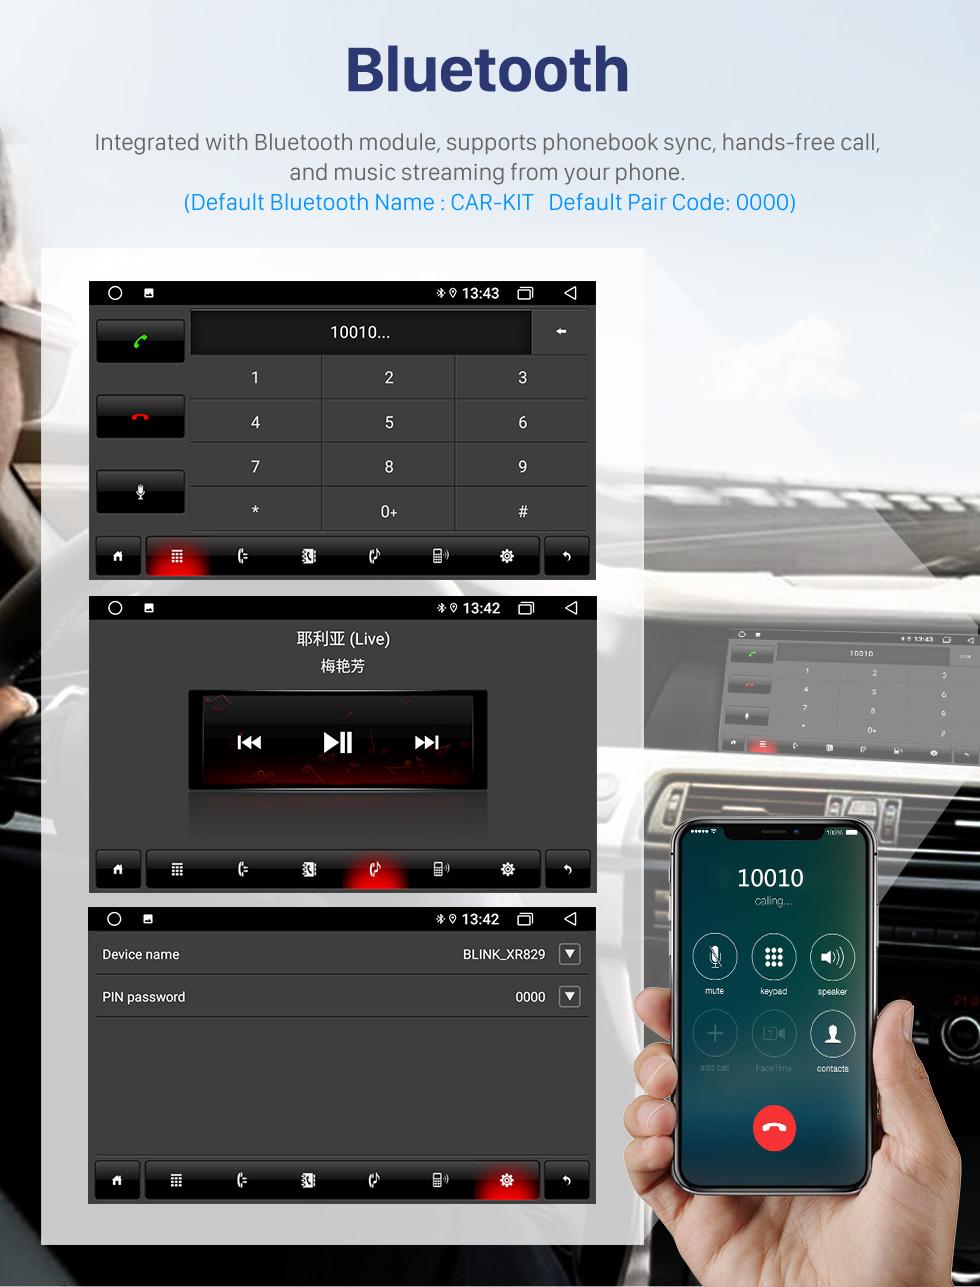 Seicane 8-дюймовый Android 10.0 для 2001-2010 Mercedes Benz E / W211 Стерео GPS-навигационная система с Bluetooth OBD2 DVR HD с сенсорным экраном Камера заднего вида